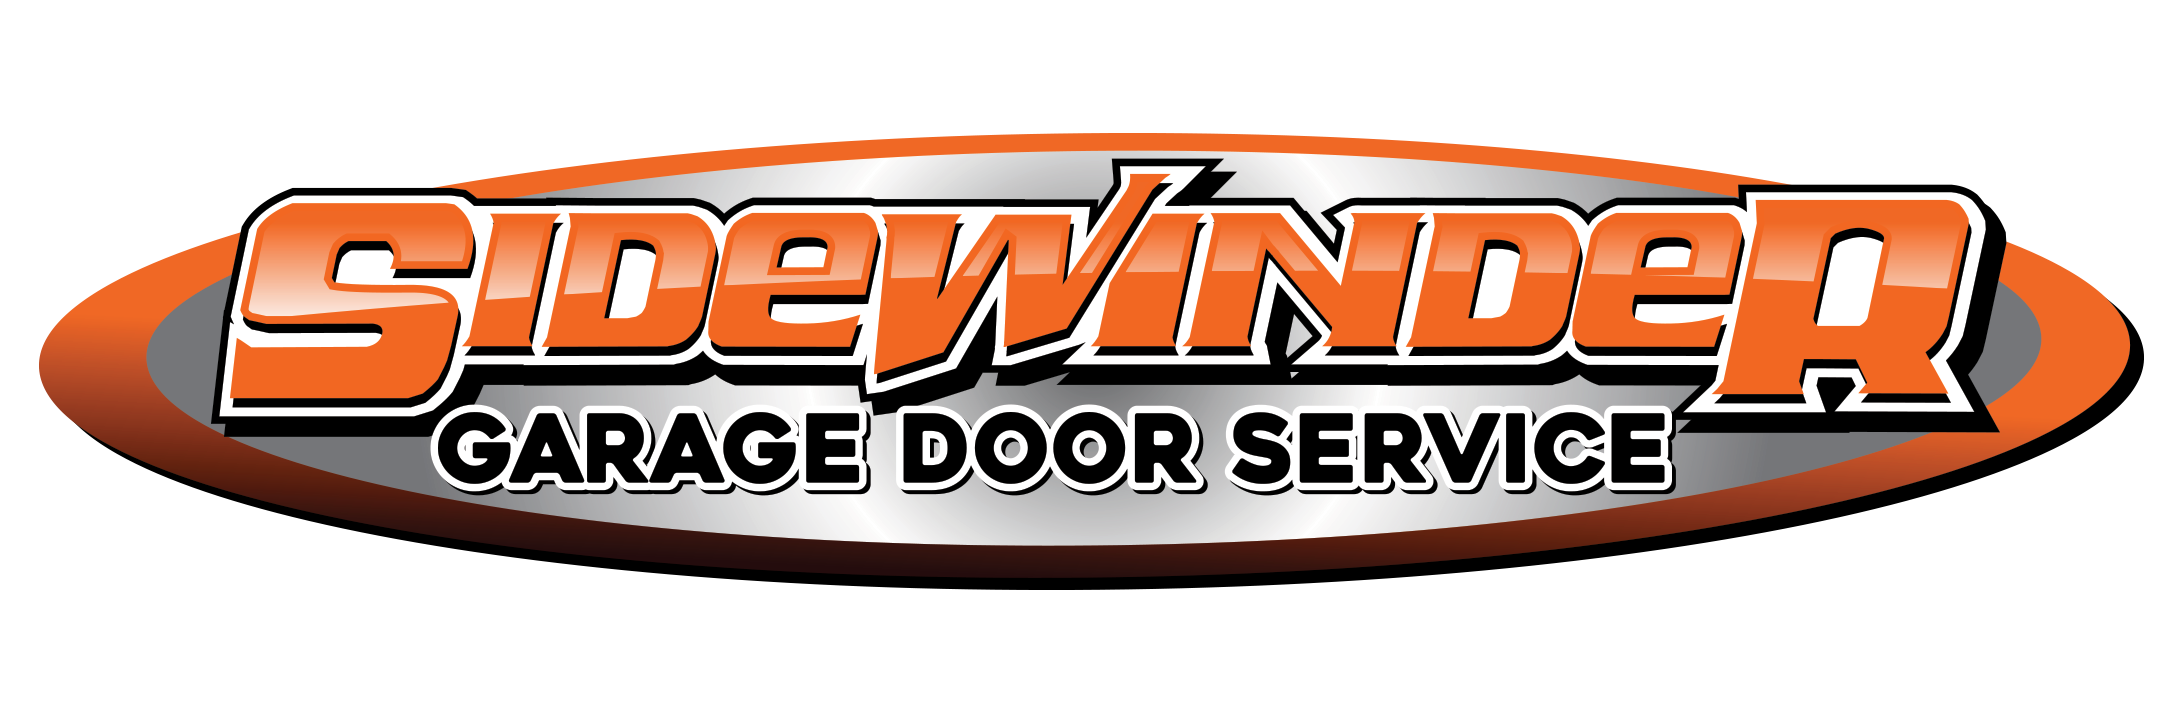 Sidewinder Garage Door Service LLC Logo